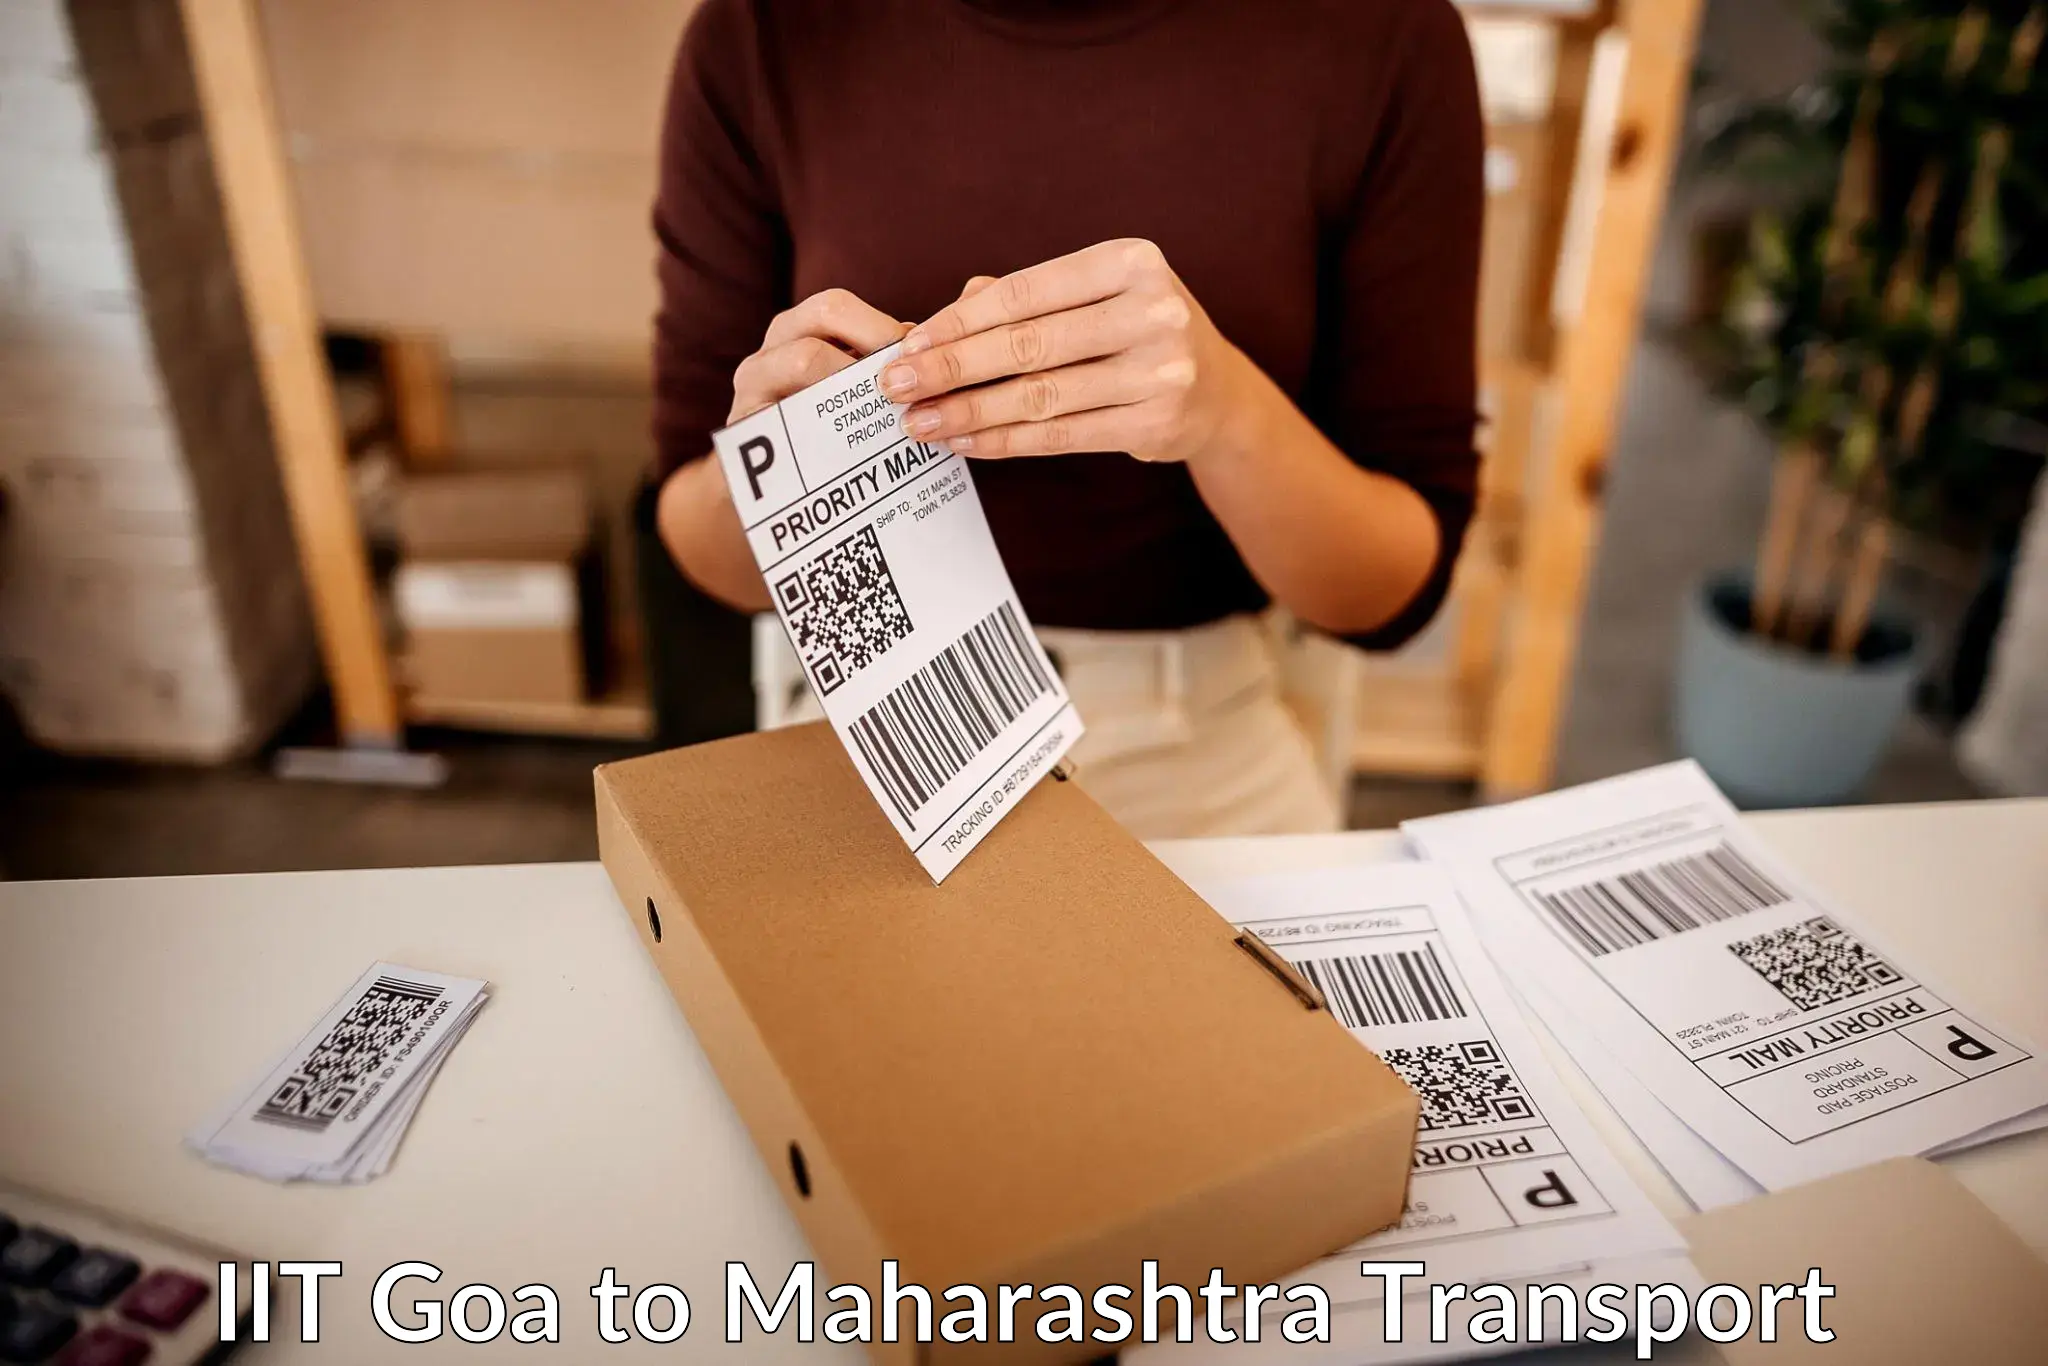 All India transport service IIT Goa to Maharashtra